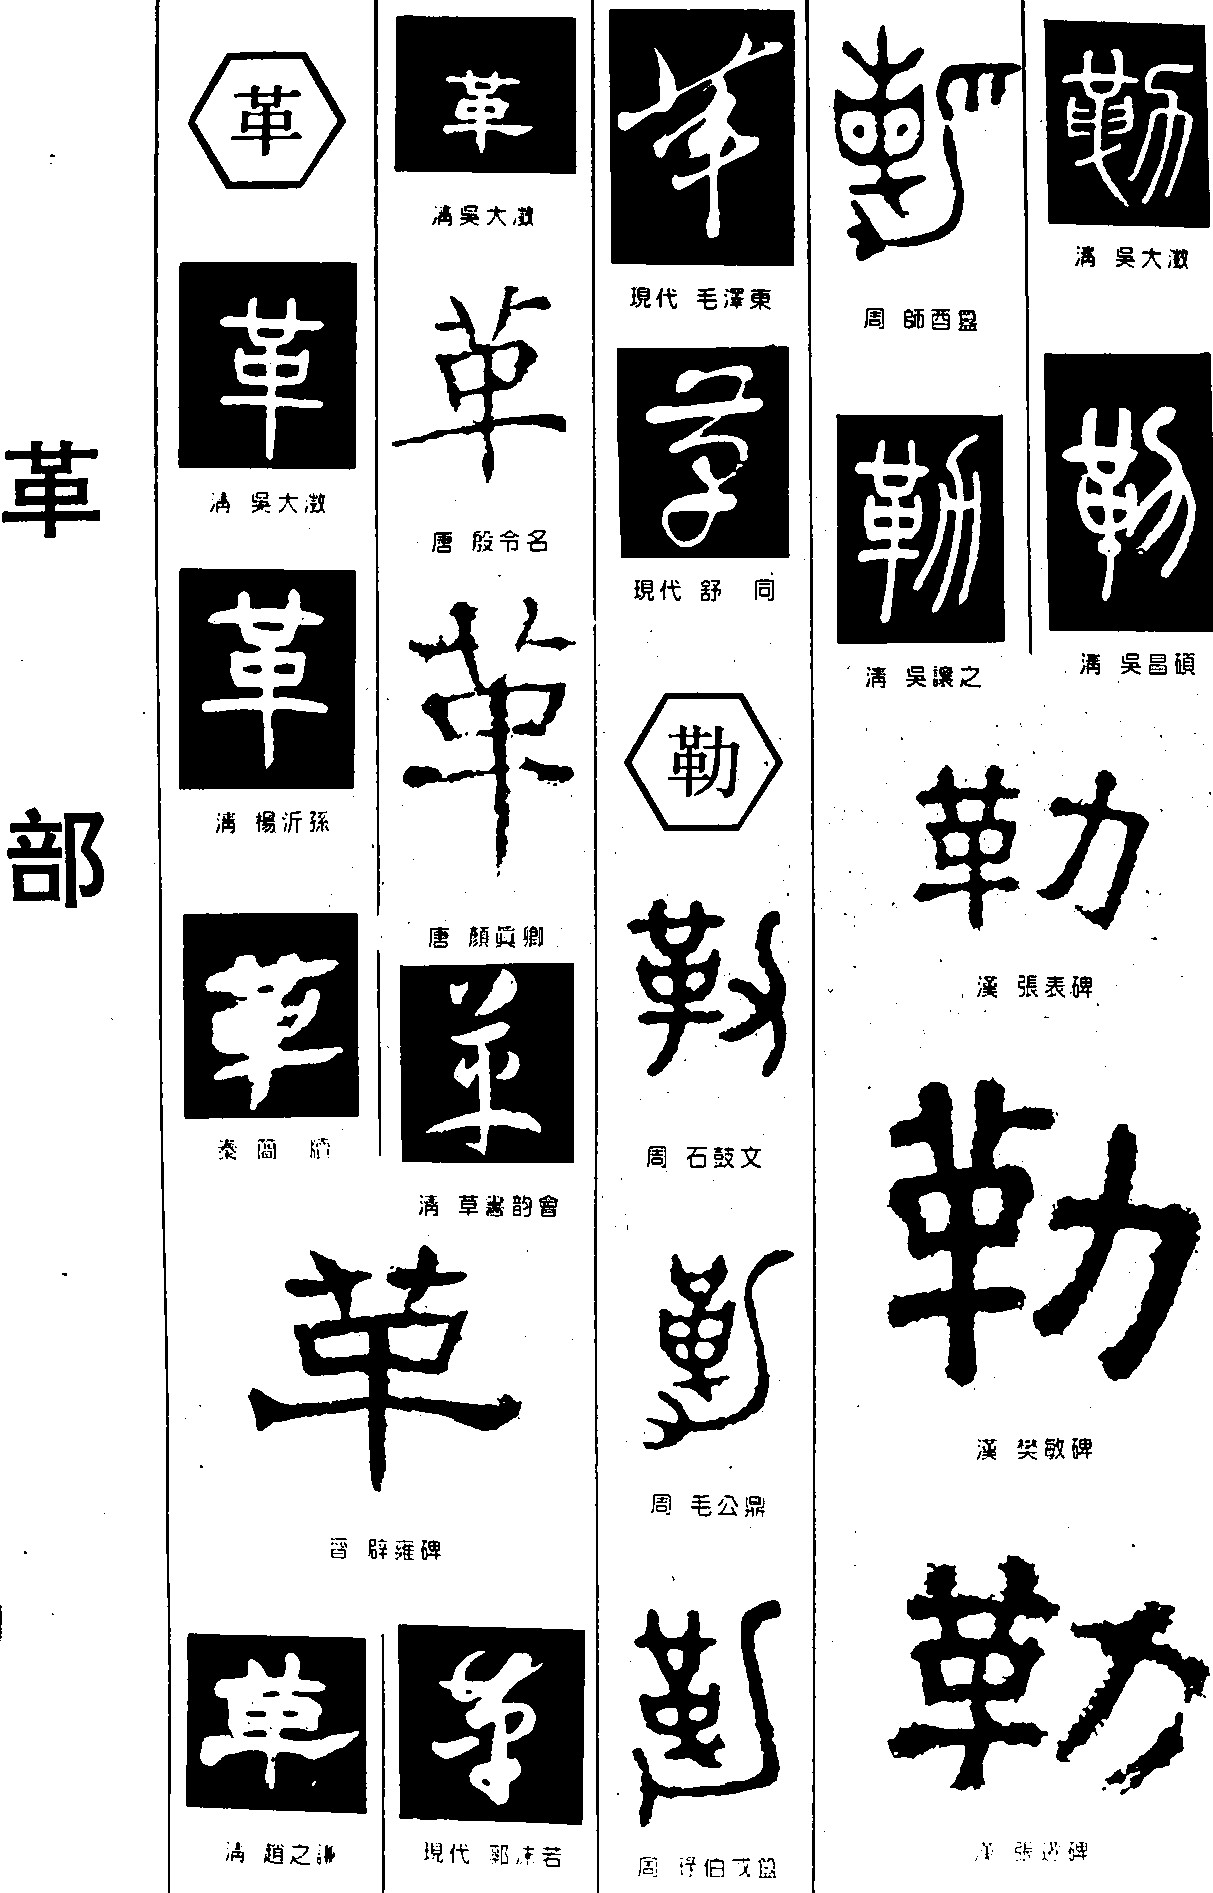 革勒_书法字体_字体设计作品-中国字体设计网_ziti.